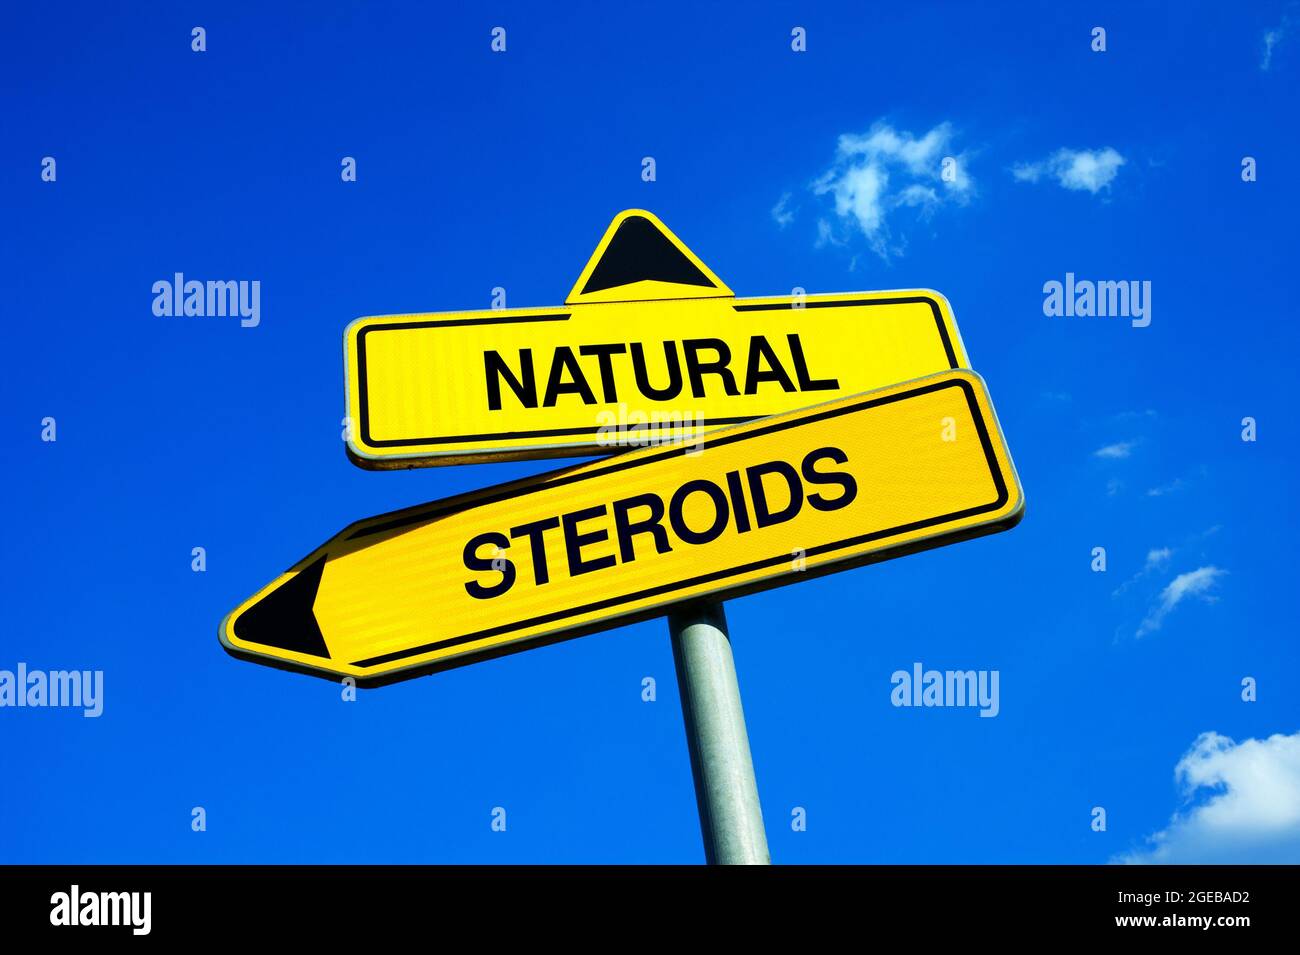 Guía práctica: esteroides anabolicos orales Conceptos básicos para principiantes